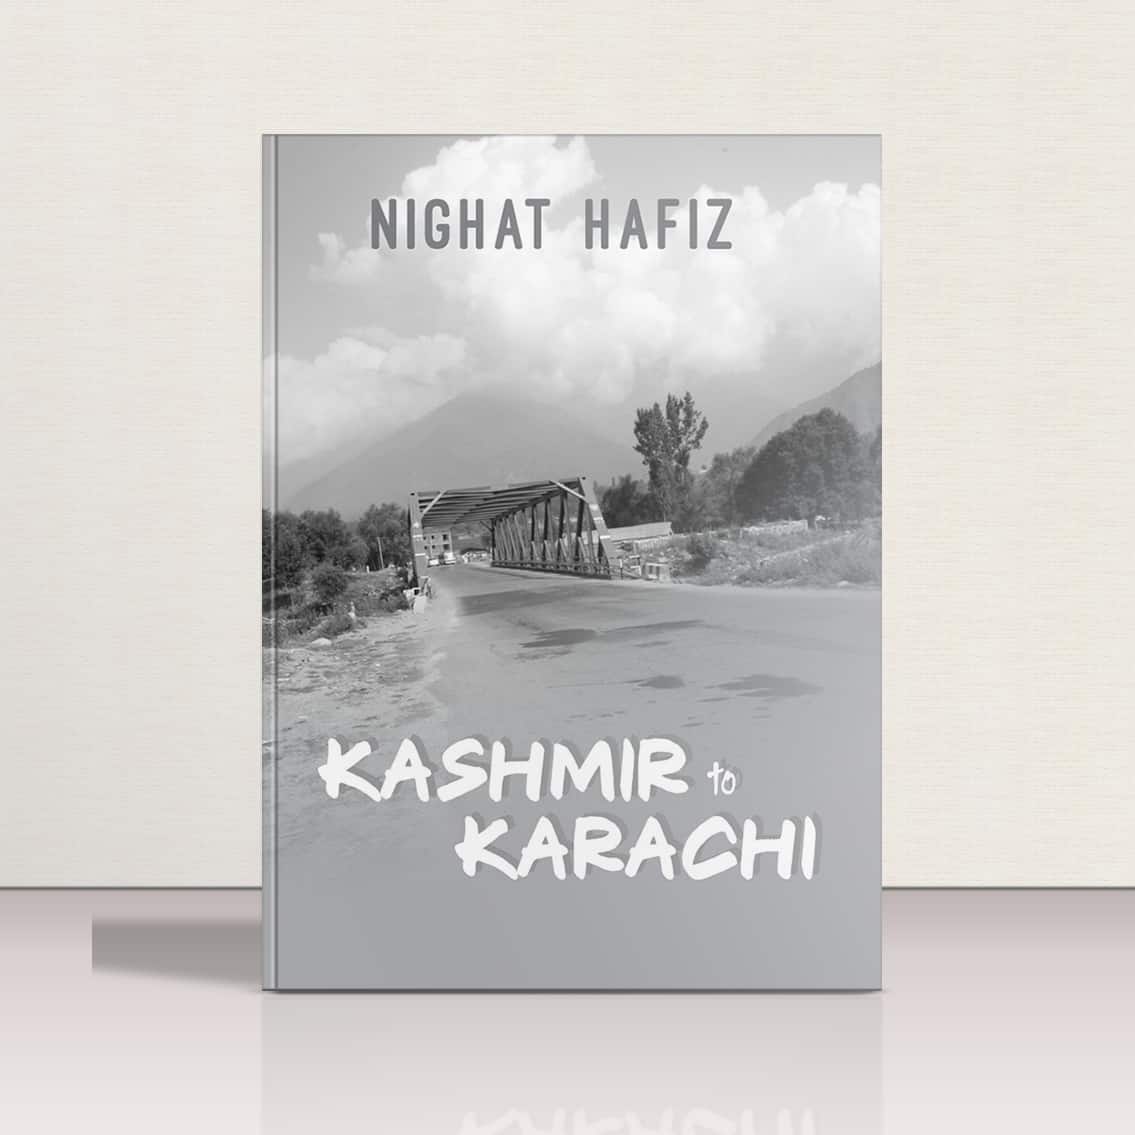 Kashmir to Karachi by Nighat Hafiz